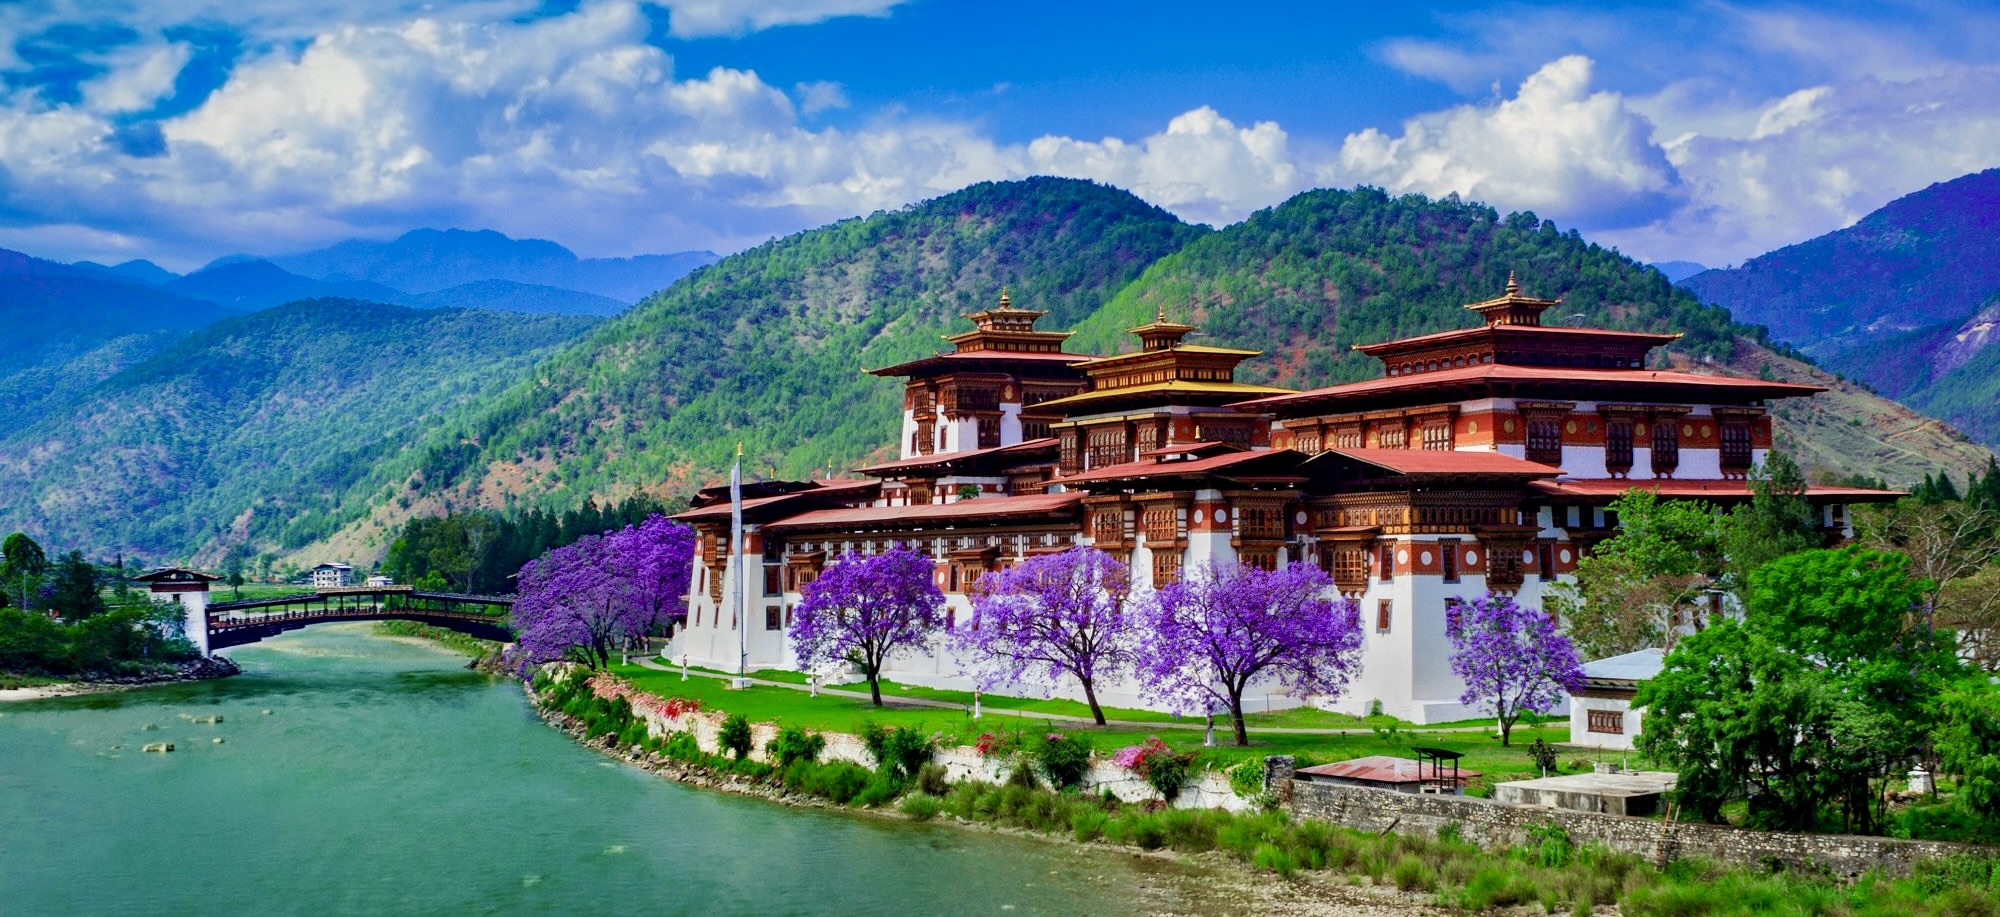 Top Places to Visit in Bhutan: Paro, Thimphu, Punakha, Bumthang, Haa Valley, Phobjikha Valley, and Trongsa.